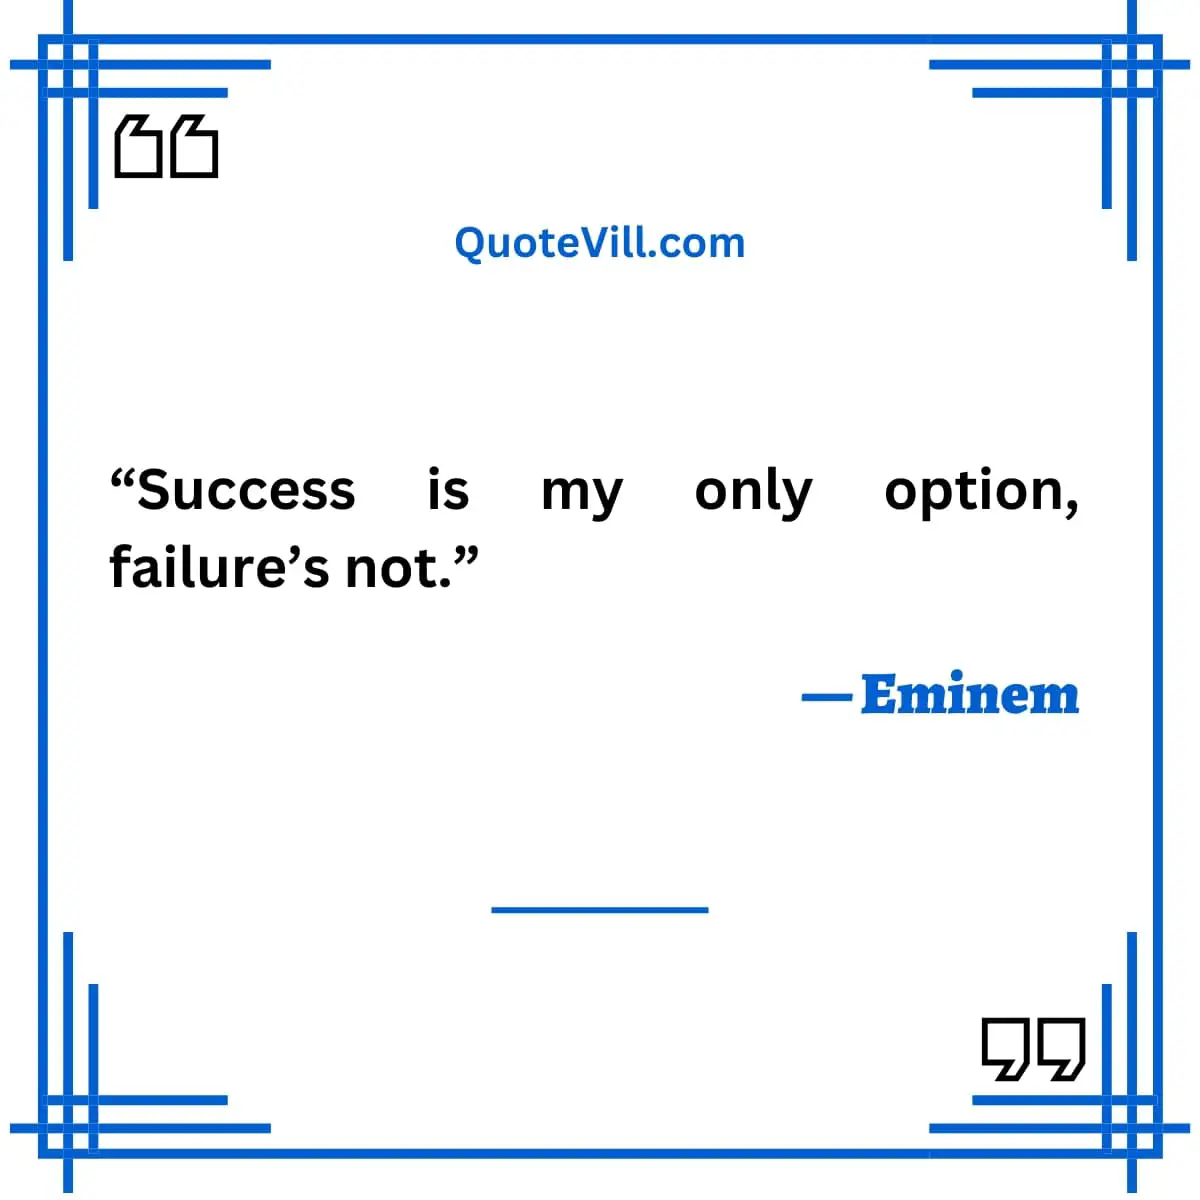 Eminem Quotes on Success